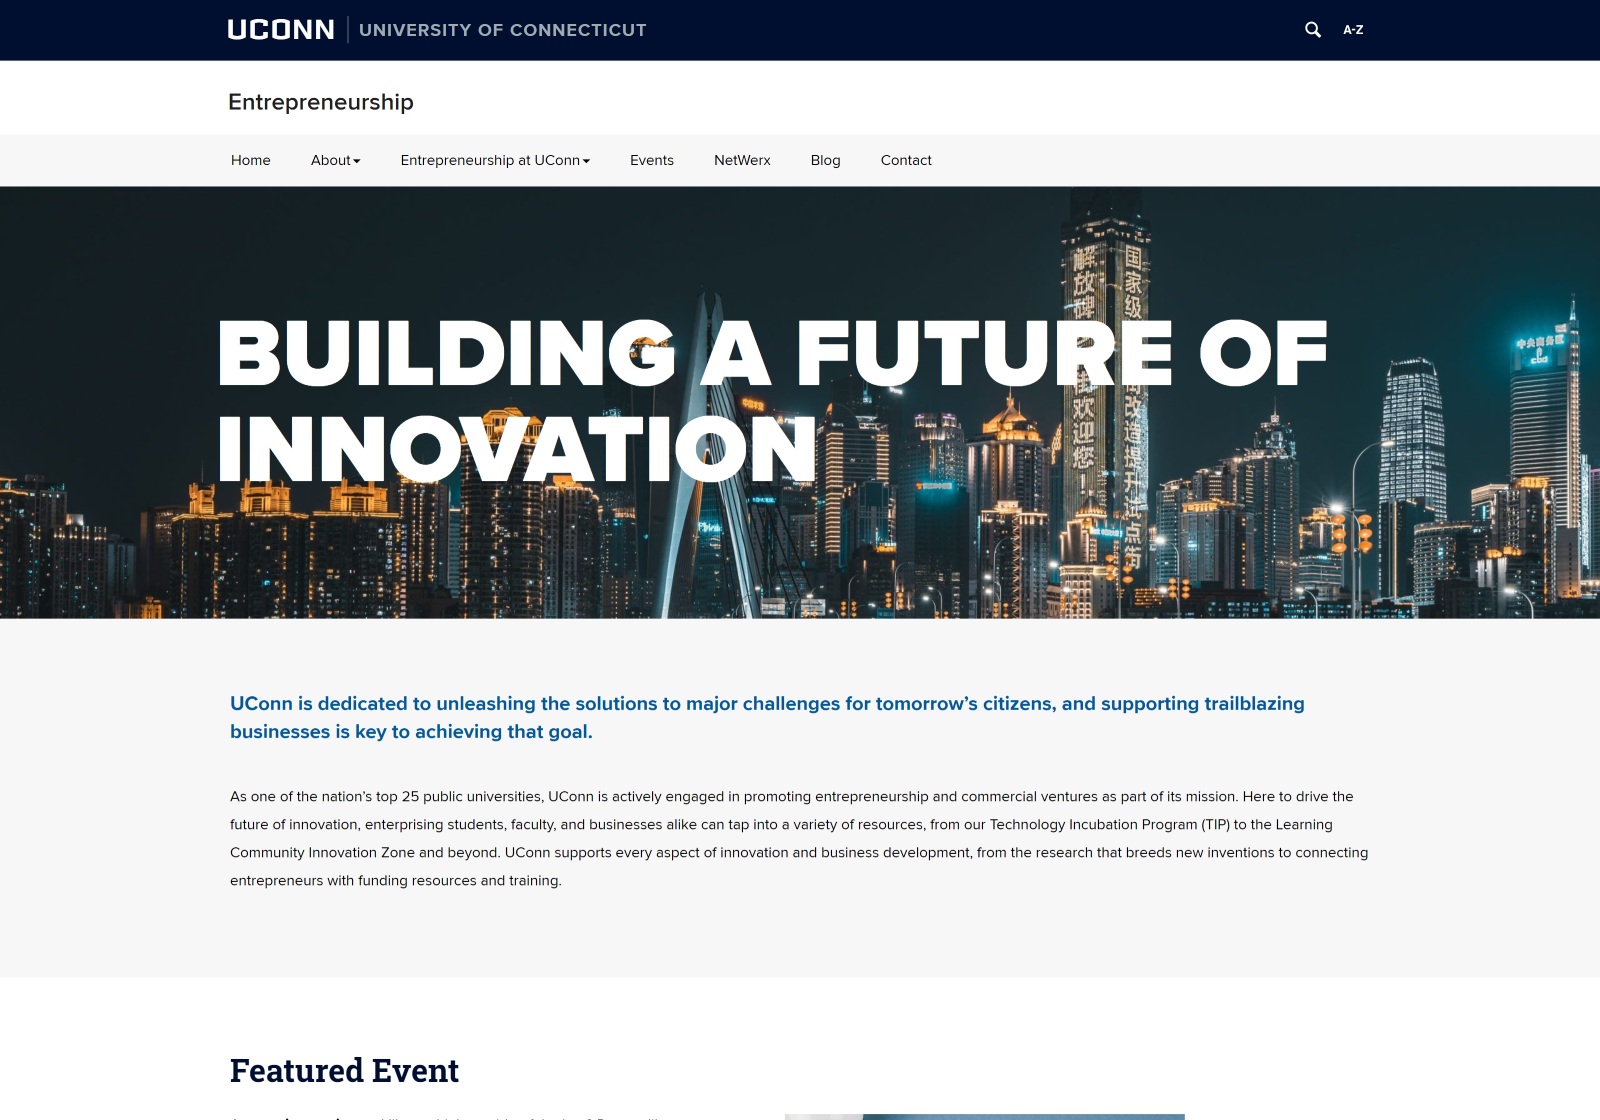 Desktop view of the UConn Entrepreneurship website